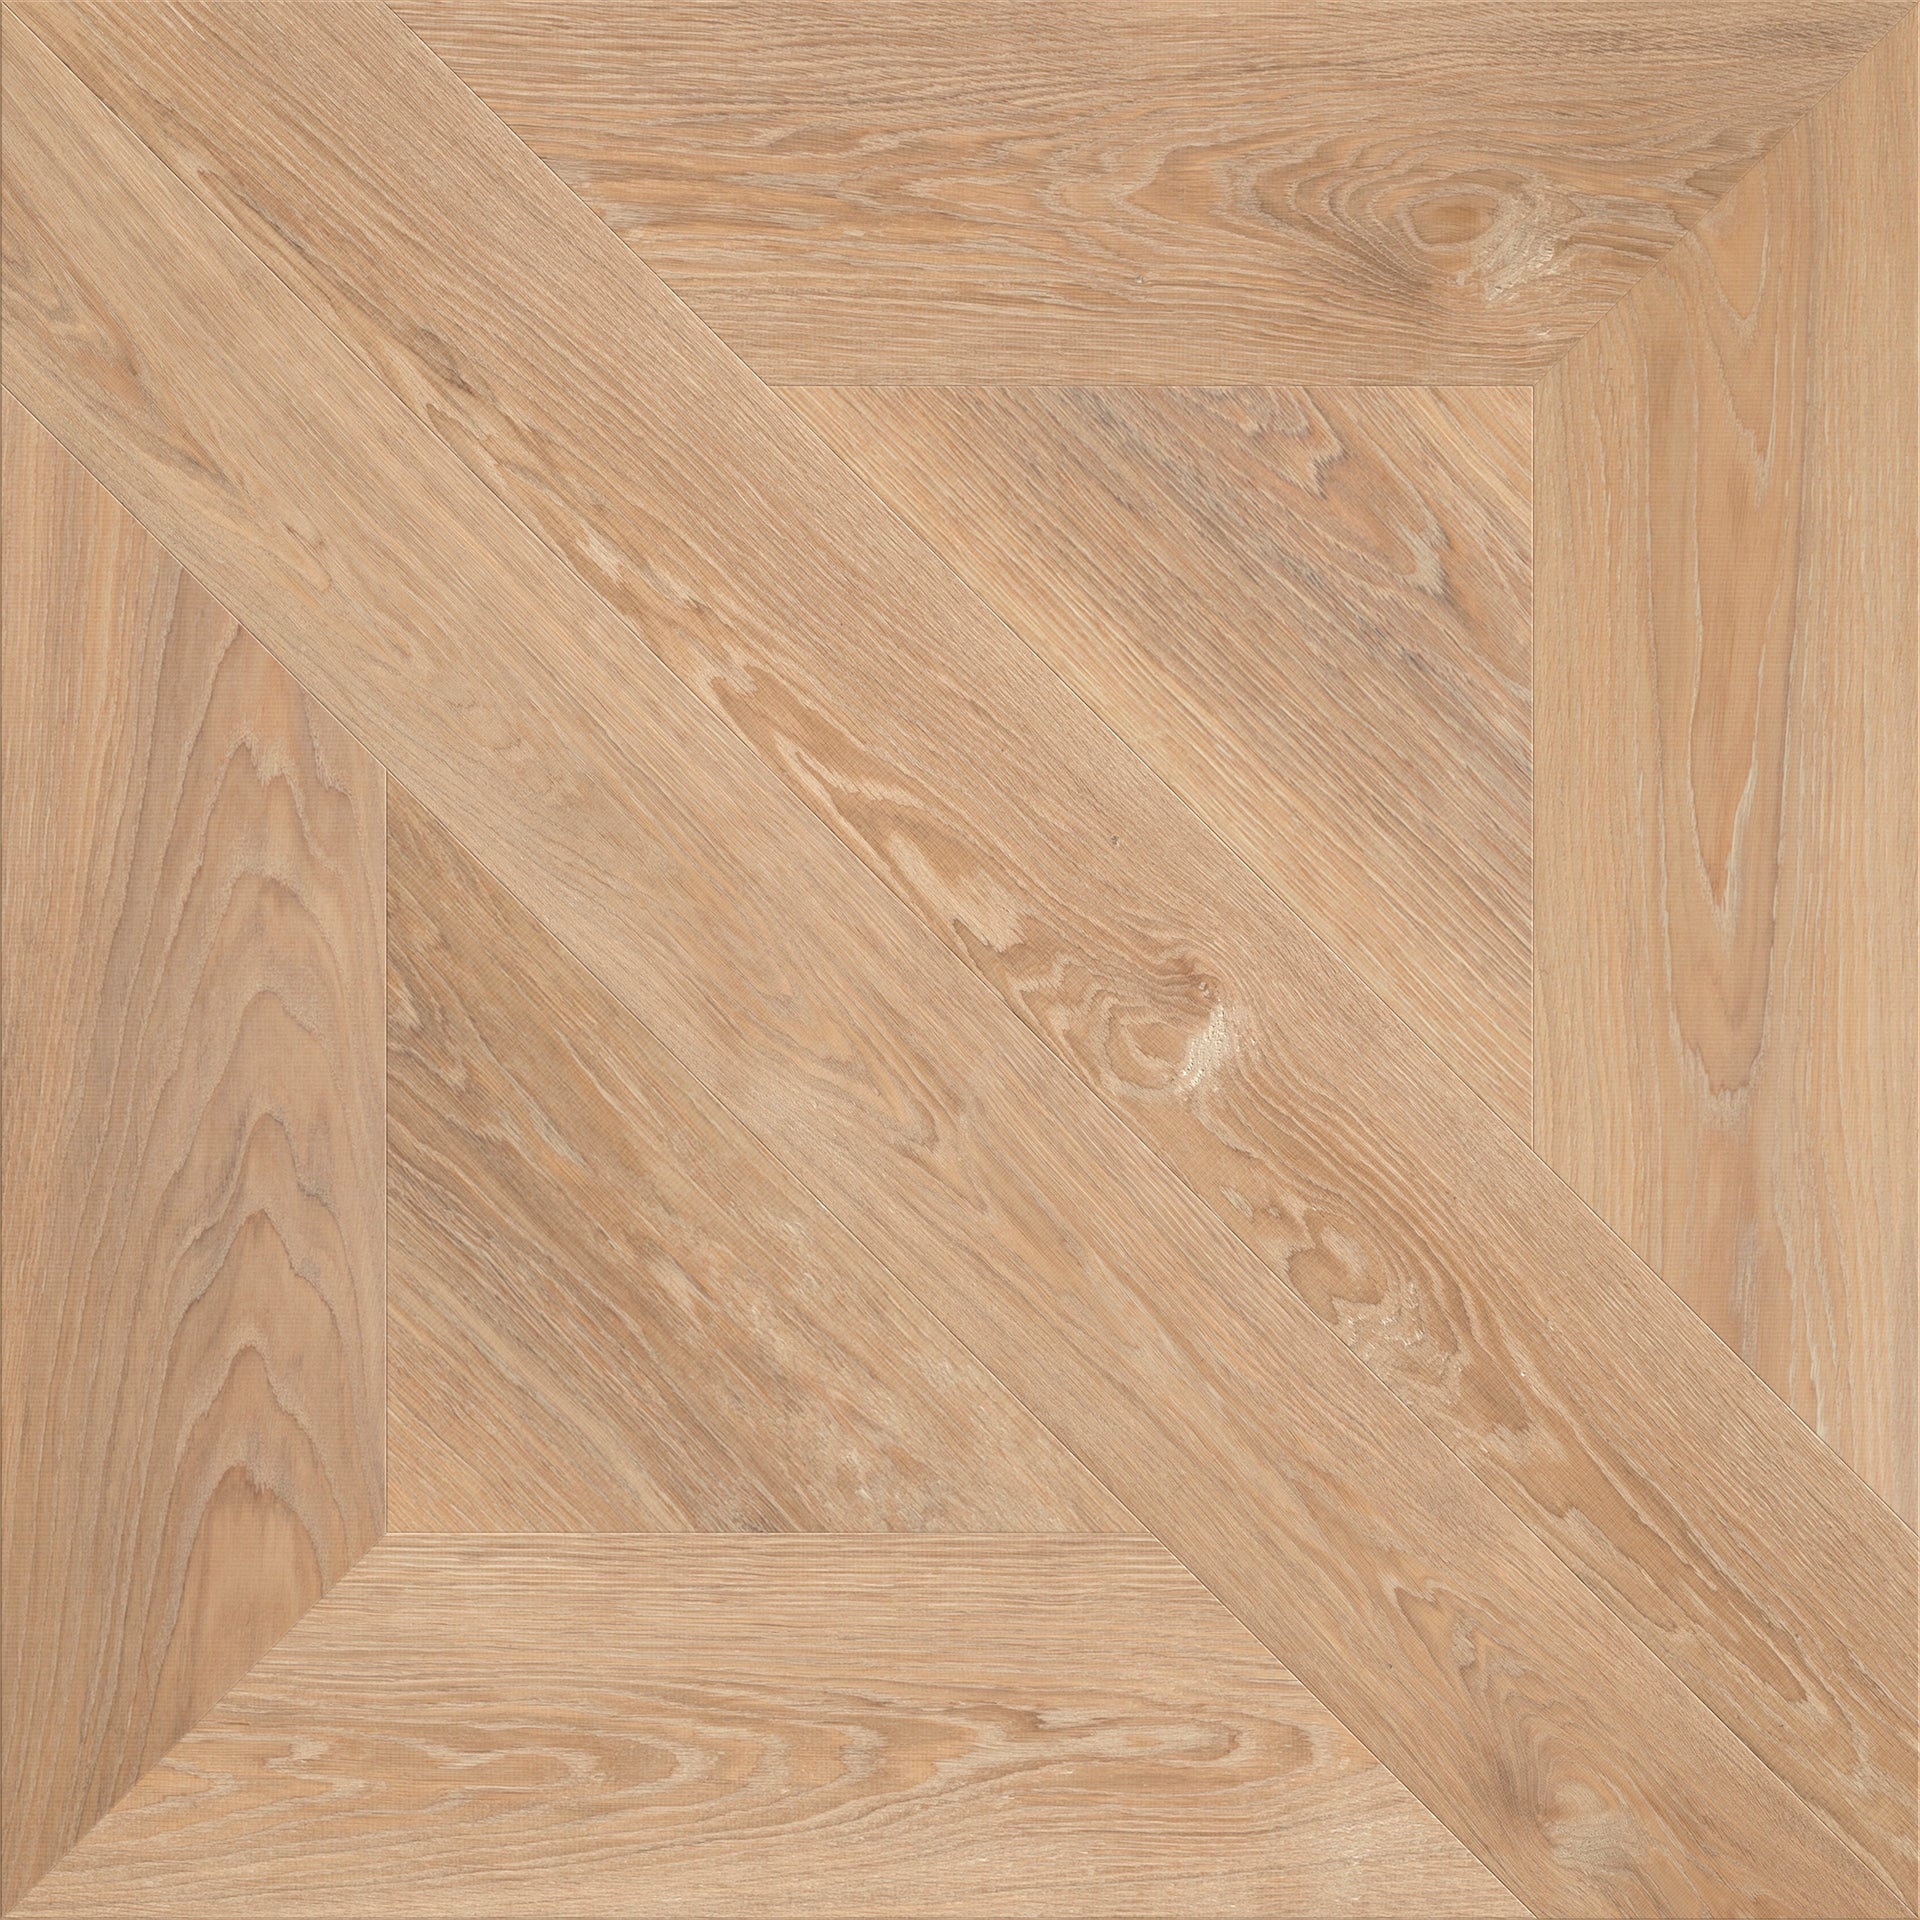 Carmel patroon houten vloeren paneel van Uipkes